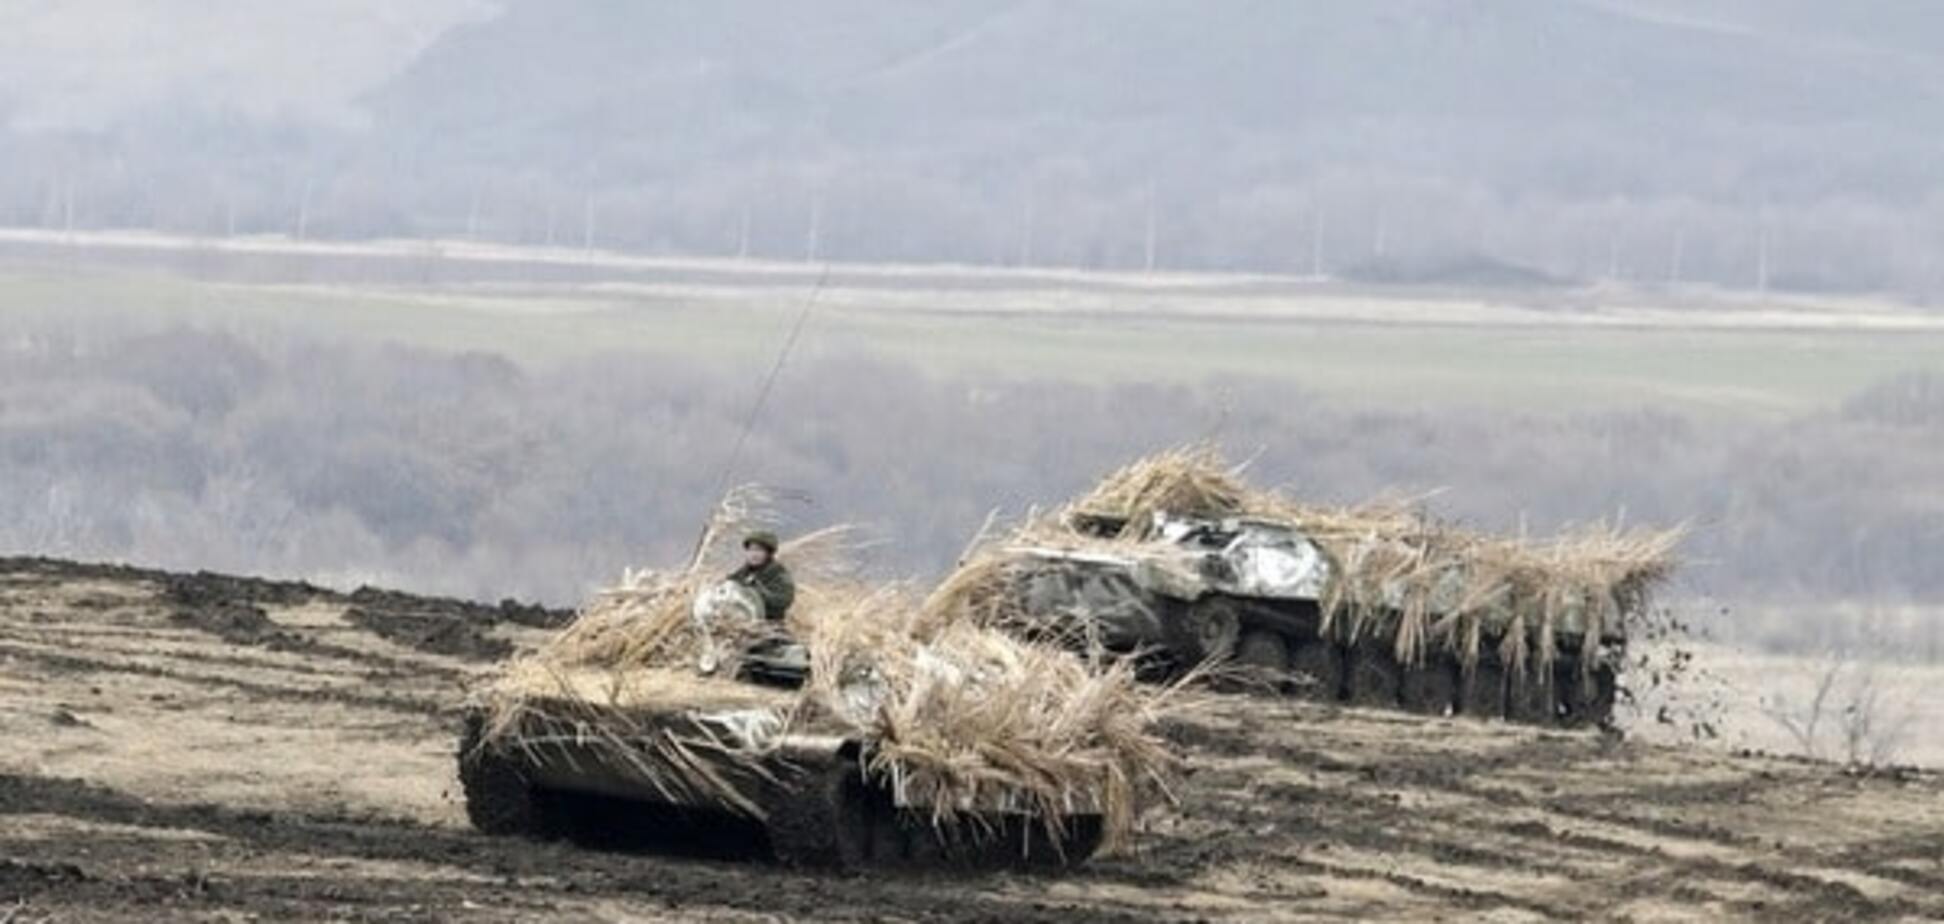 На Донецк движется колонна военной техники - активист